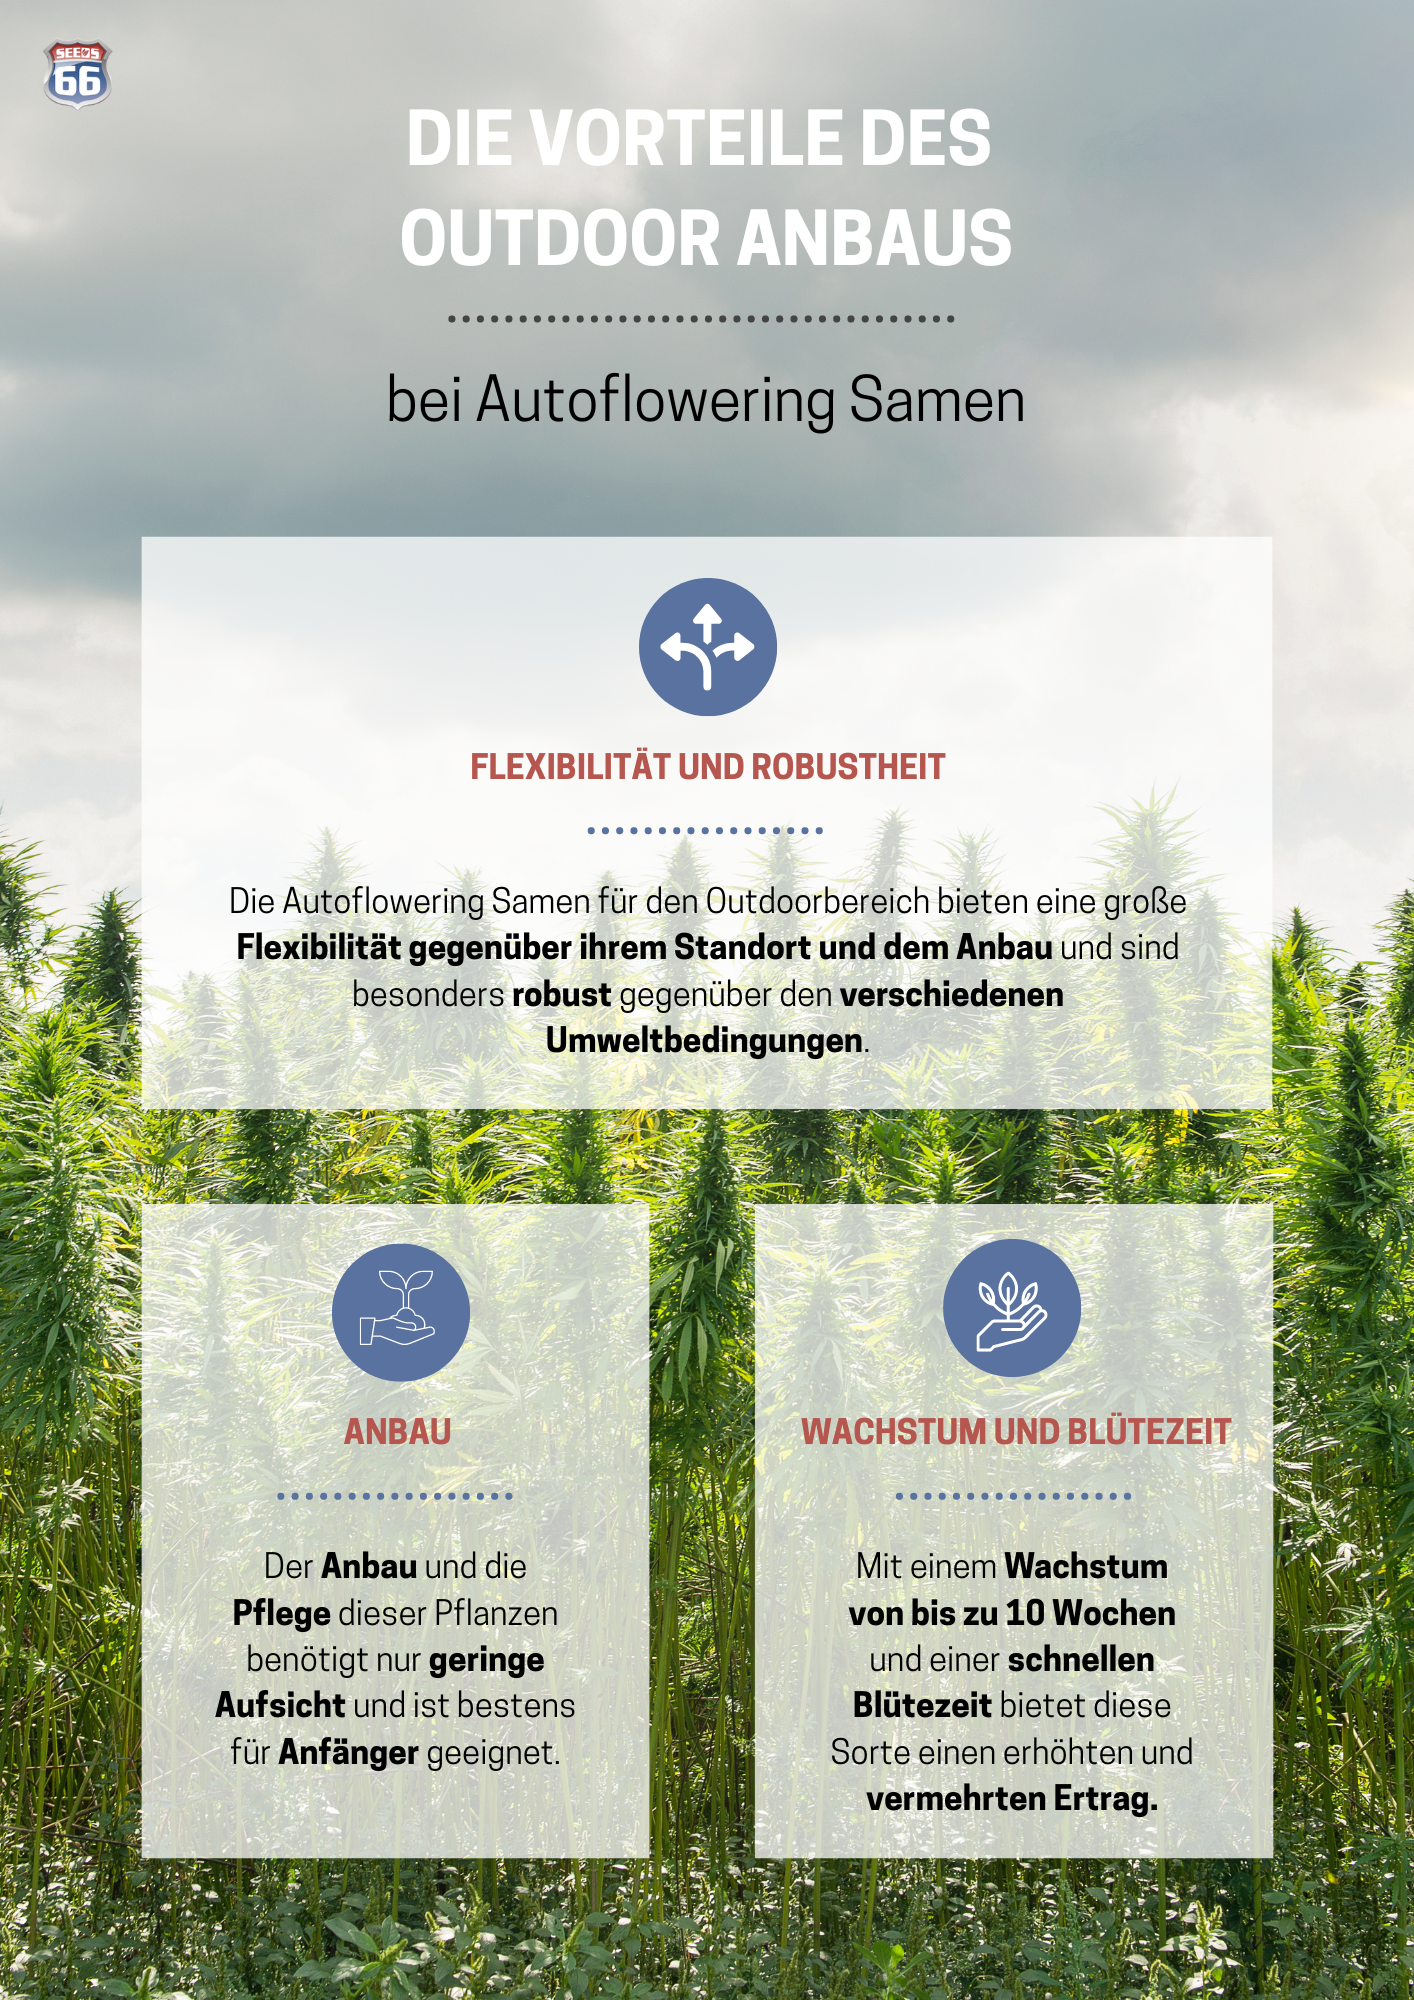 autoflowering_outdoor_samen_vorteile_infografik